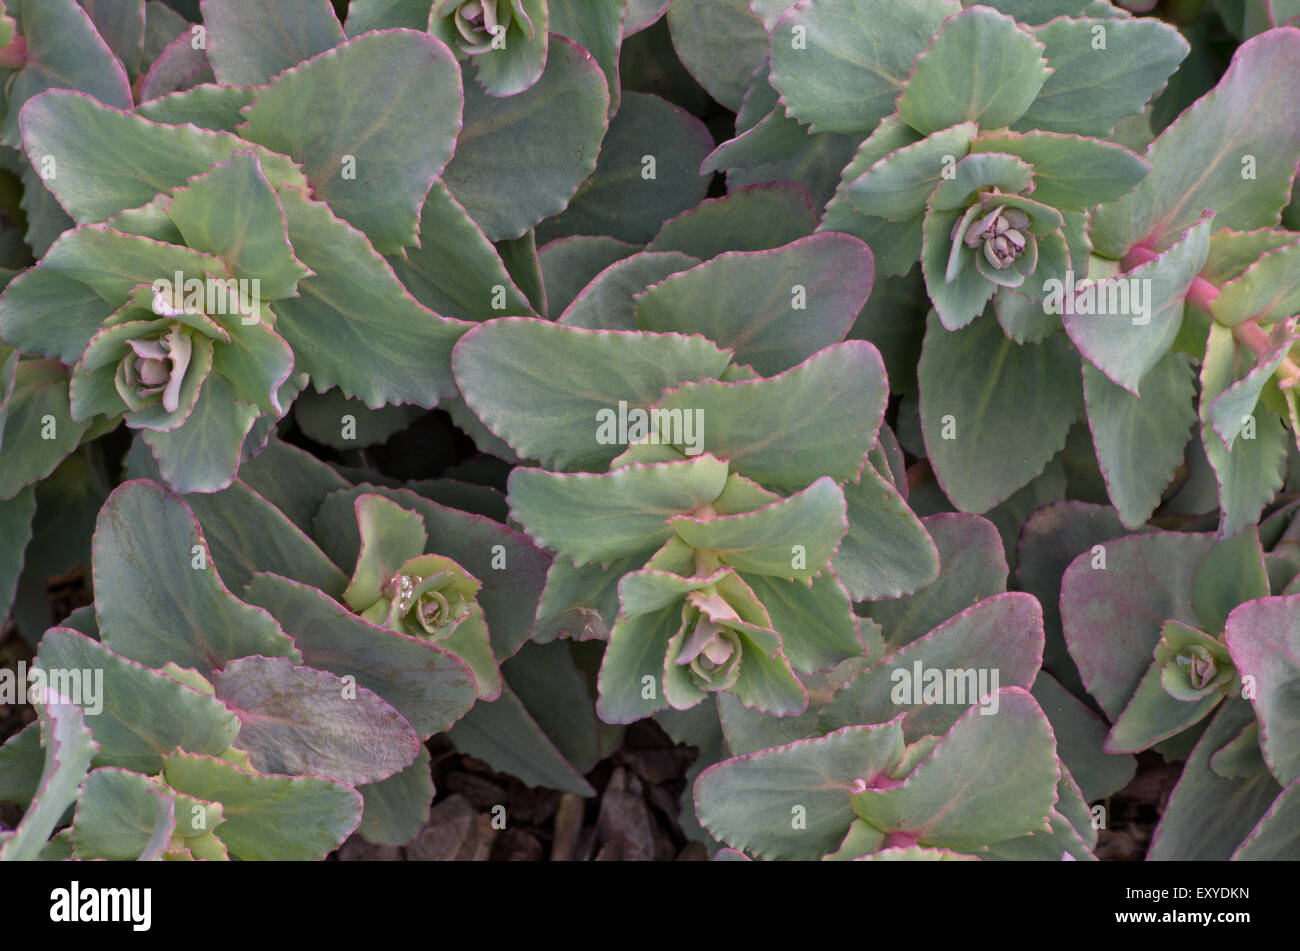 Sedum telephium subsp ruprechtii Stock Photo